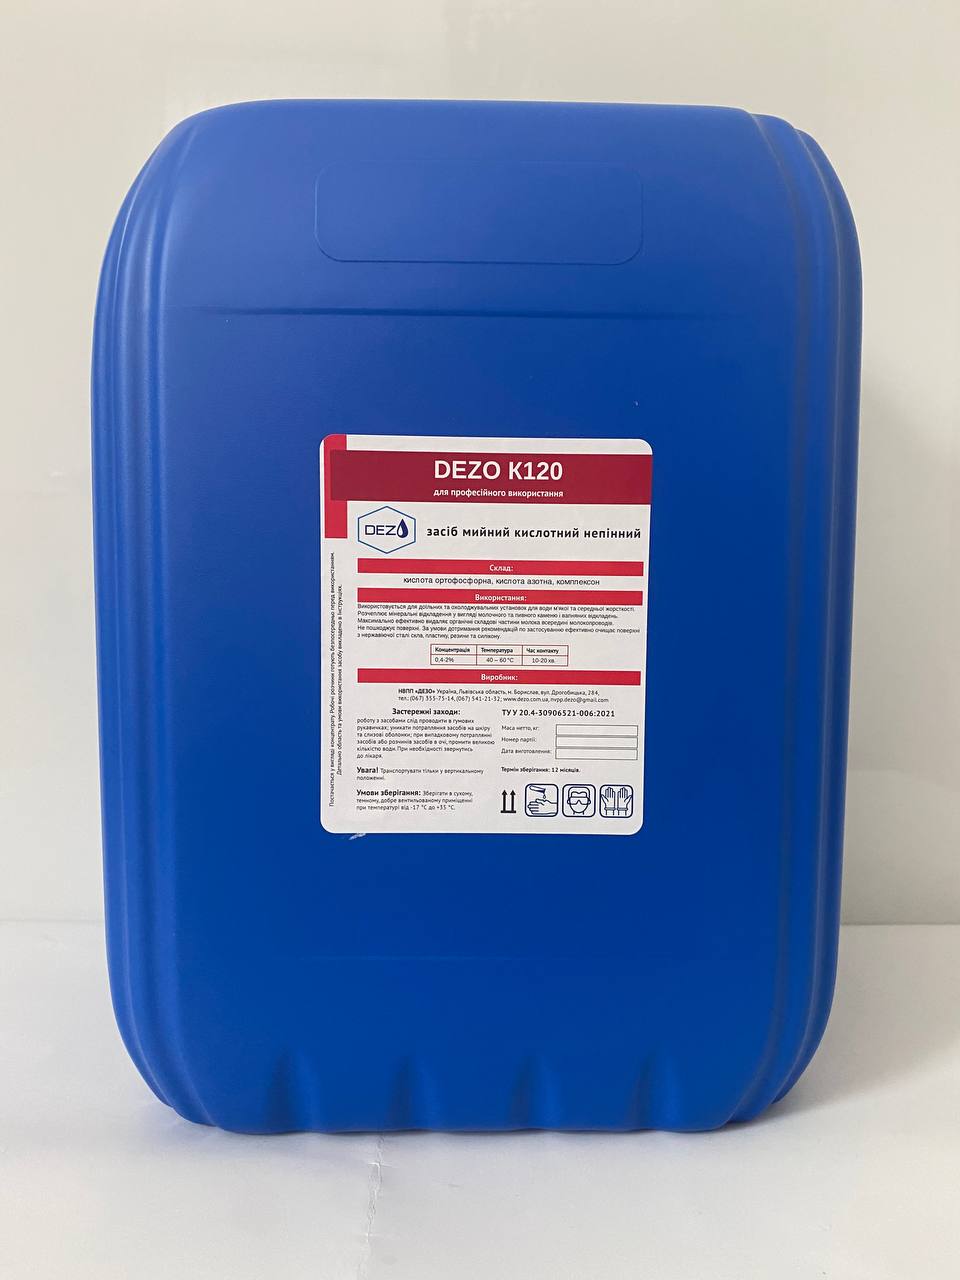 Засіб мийний кислотний непінний DEZO К120, 12 кг